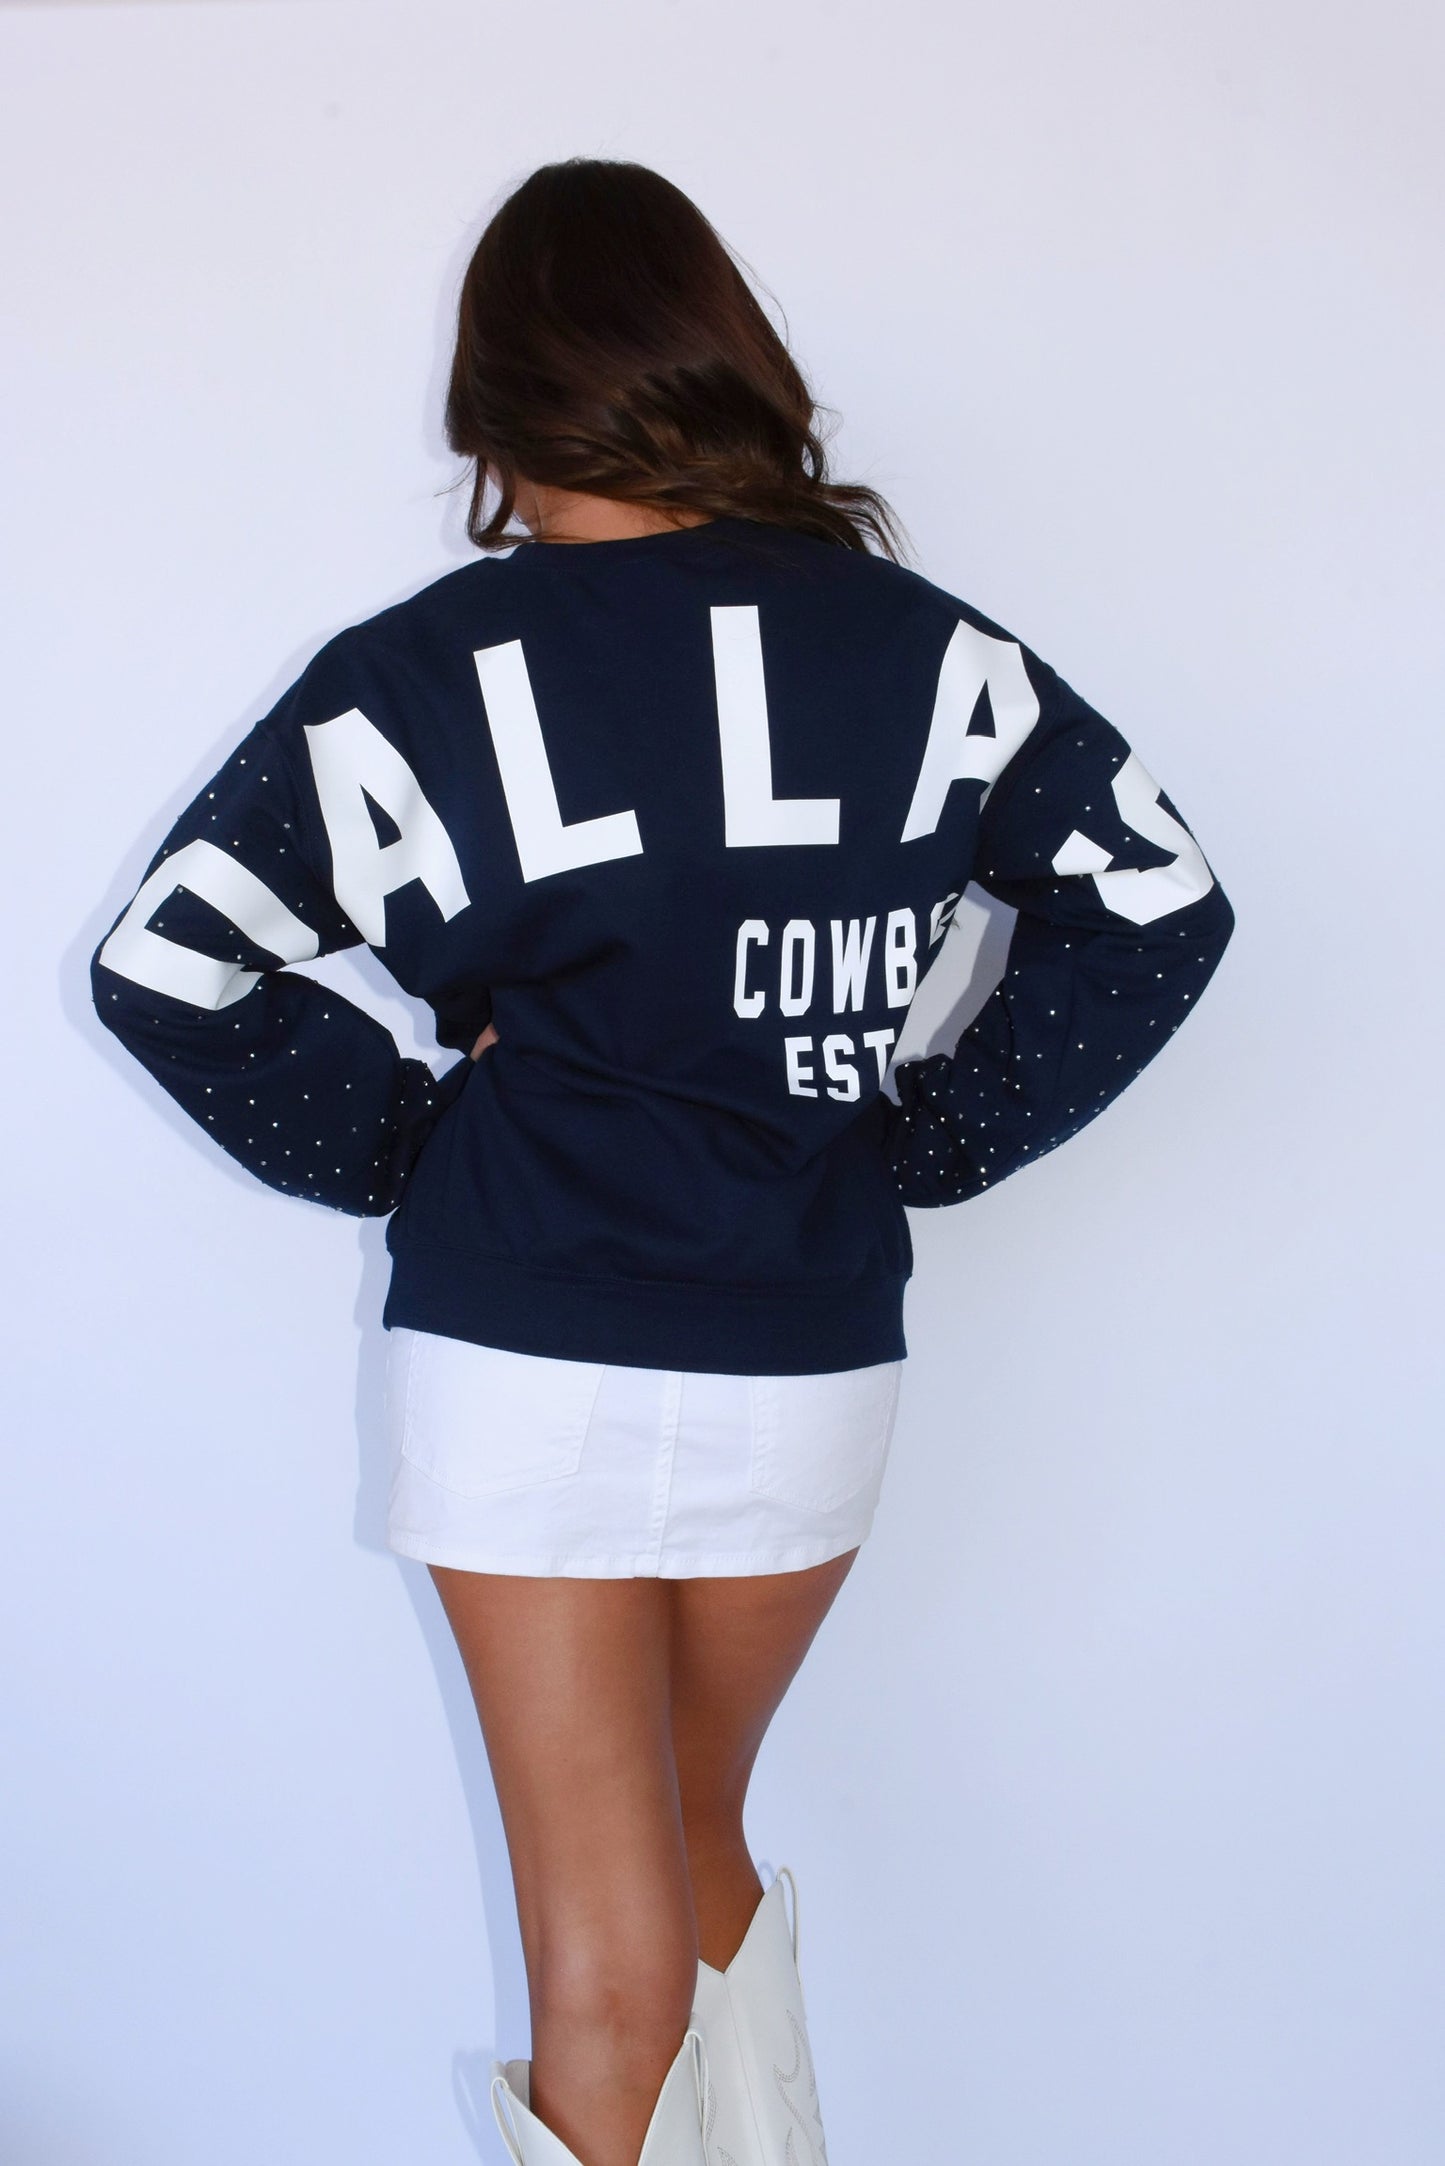 Dallas Cowboys Est. Sweatshirt